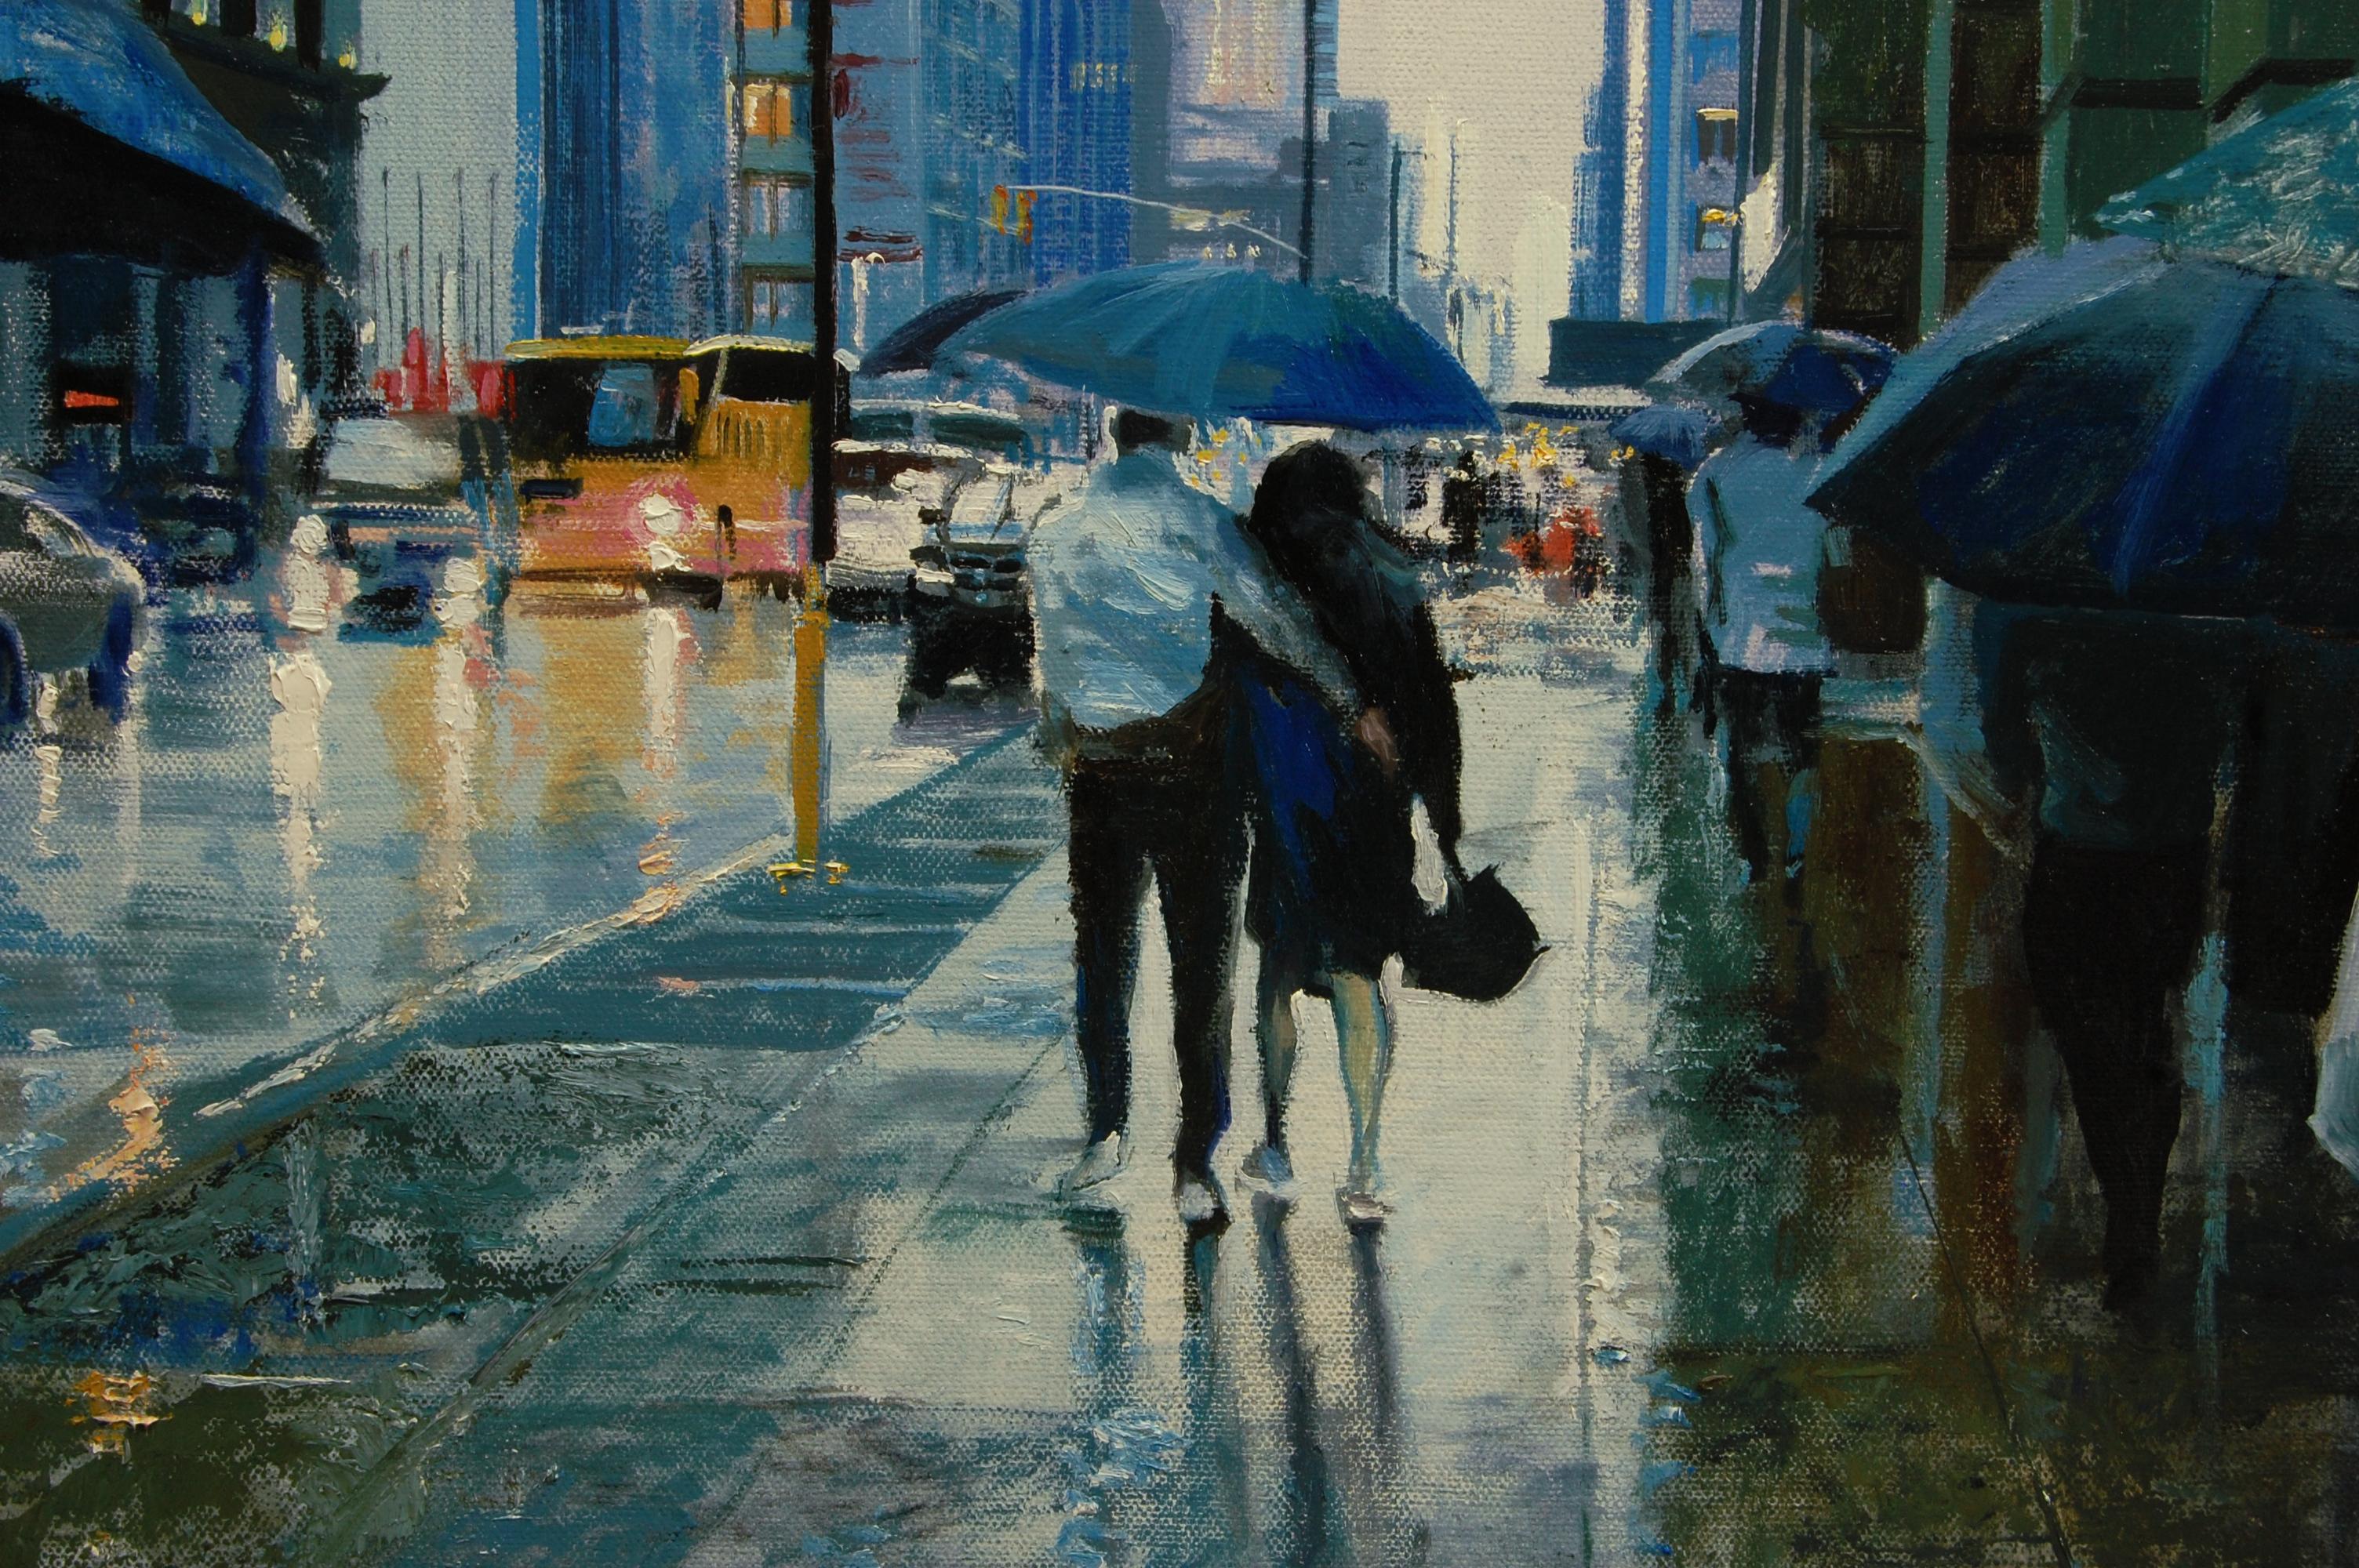 umbrellas in the rain painting